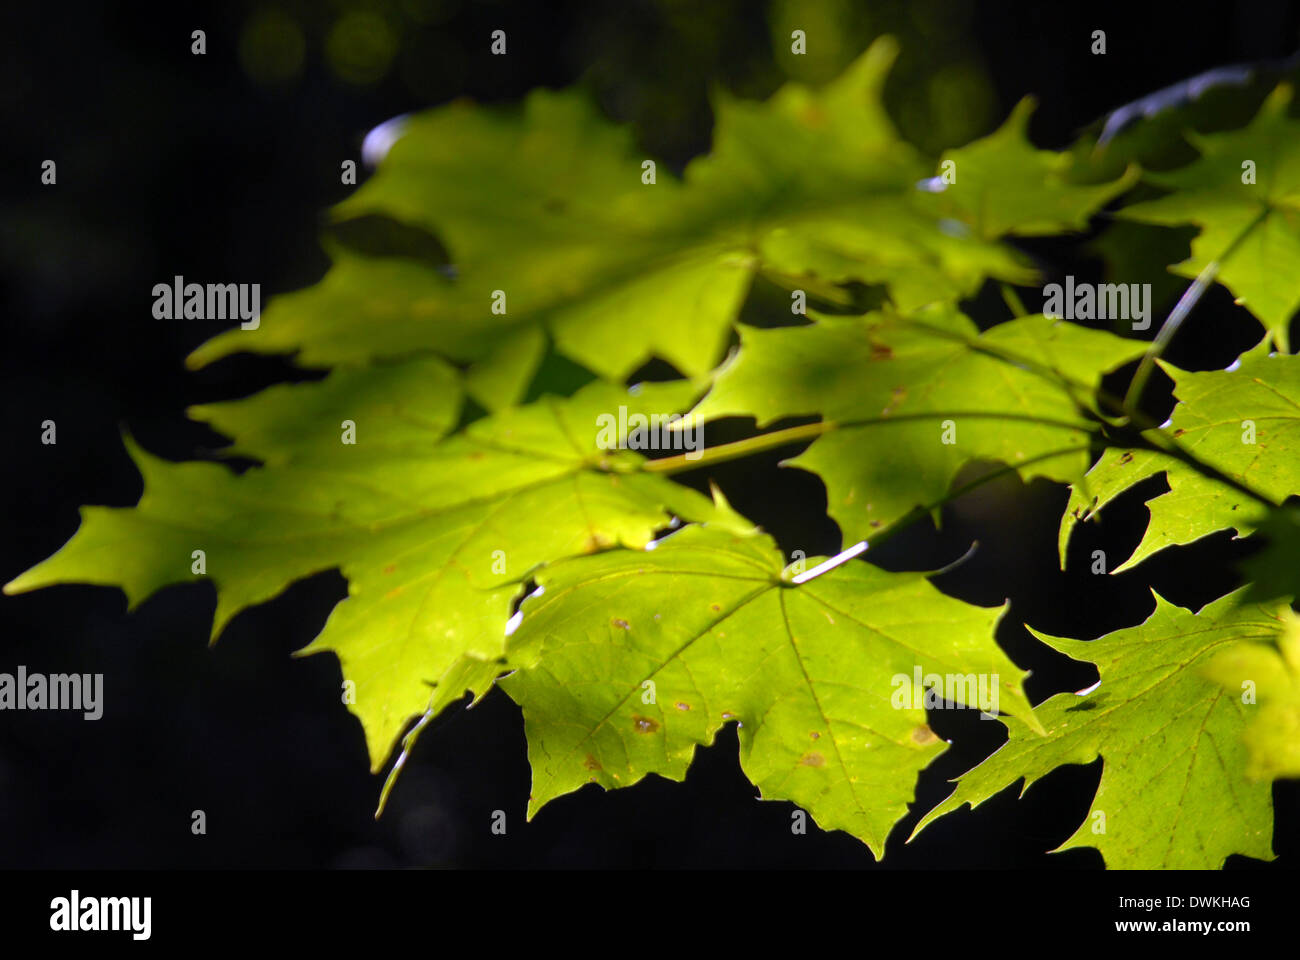 Ahornbaum Blätter Hintergrundbeleuchtung Sonne auf einem schwarzen Hintergrund. Stockfoto